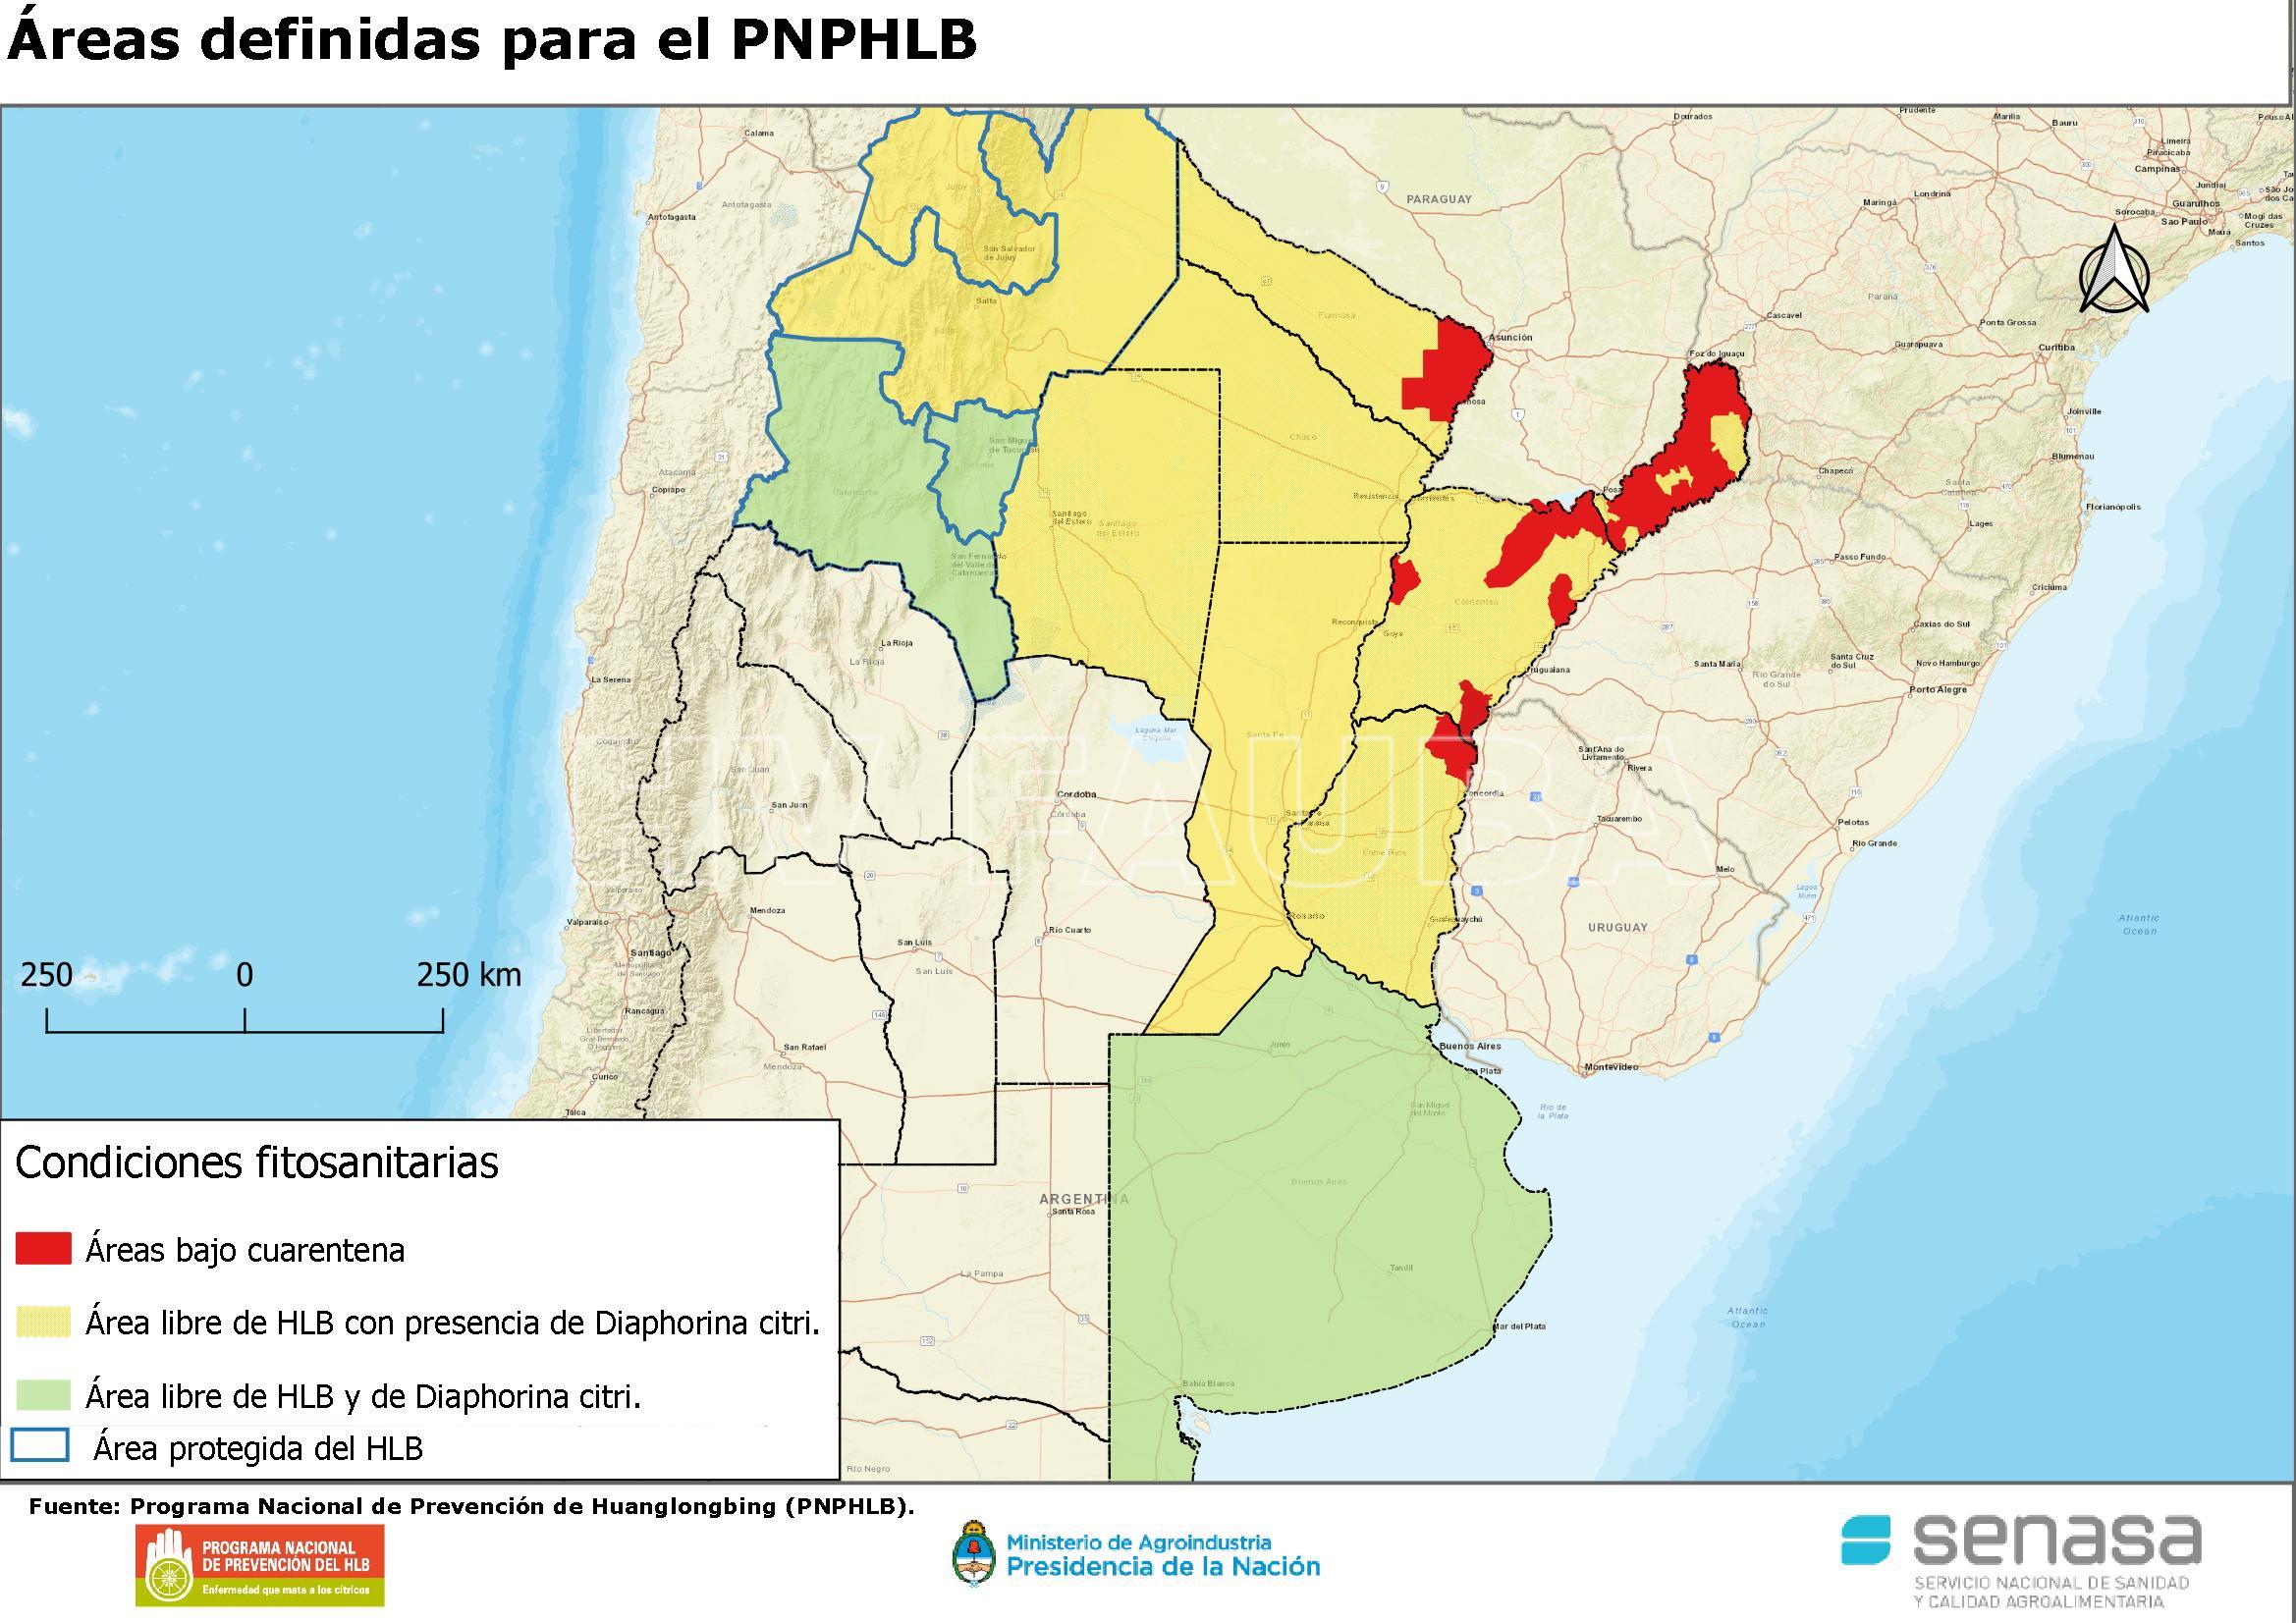 Áreas de Argentina definidas con condición fitosanitaria para el PNPHLB. Fuente: www.argentina.gob.ar